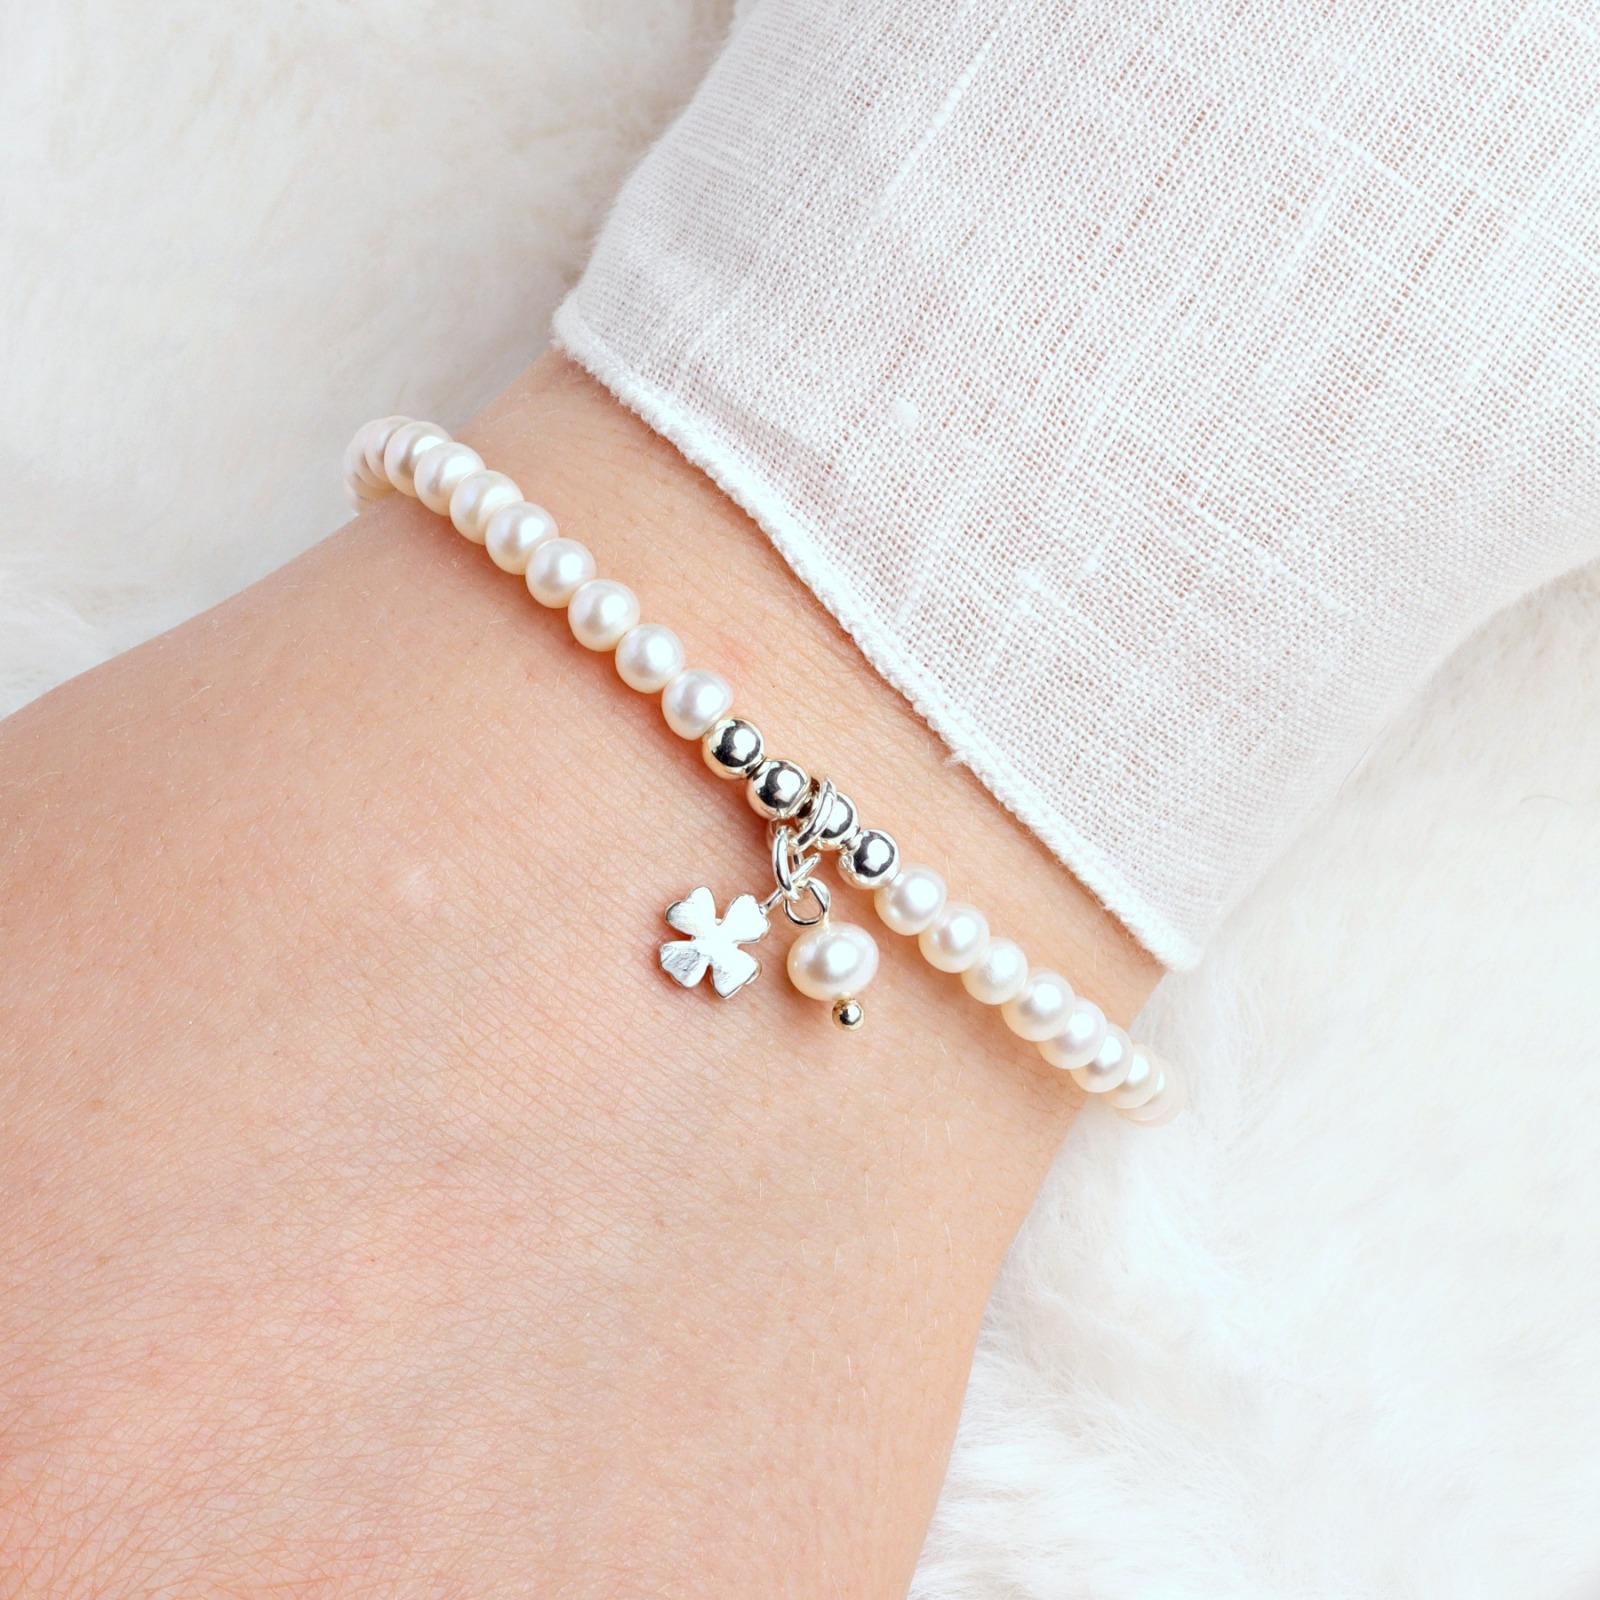 Glücks-Armband aus echten Perlen mit Kleeblatt Silber Glücksbringer-Geschenk für Frauen und Mädchen 2